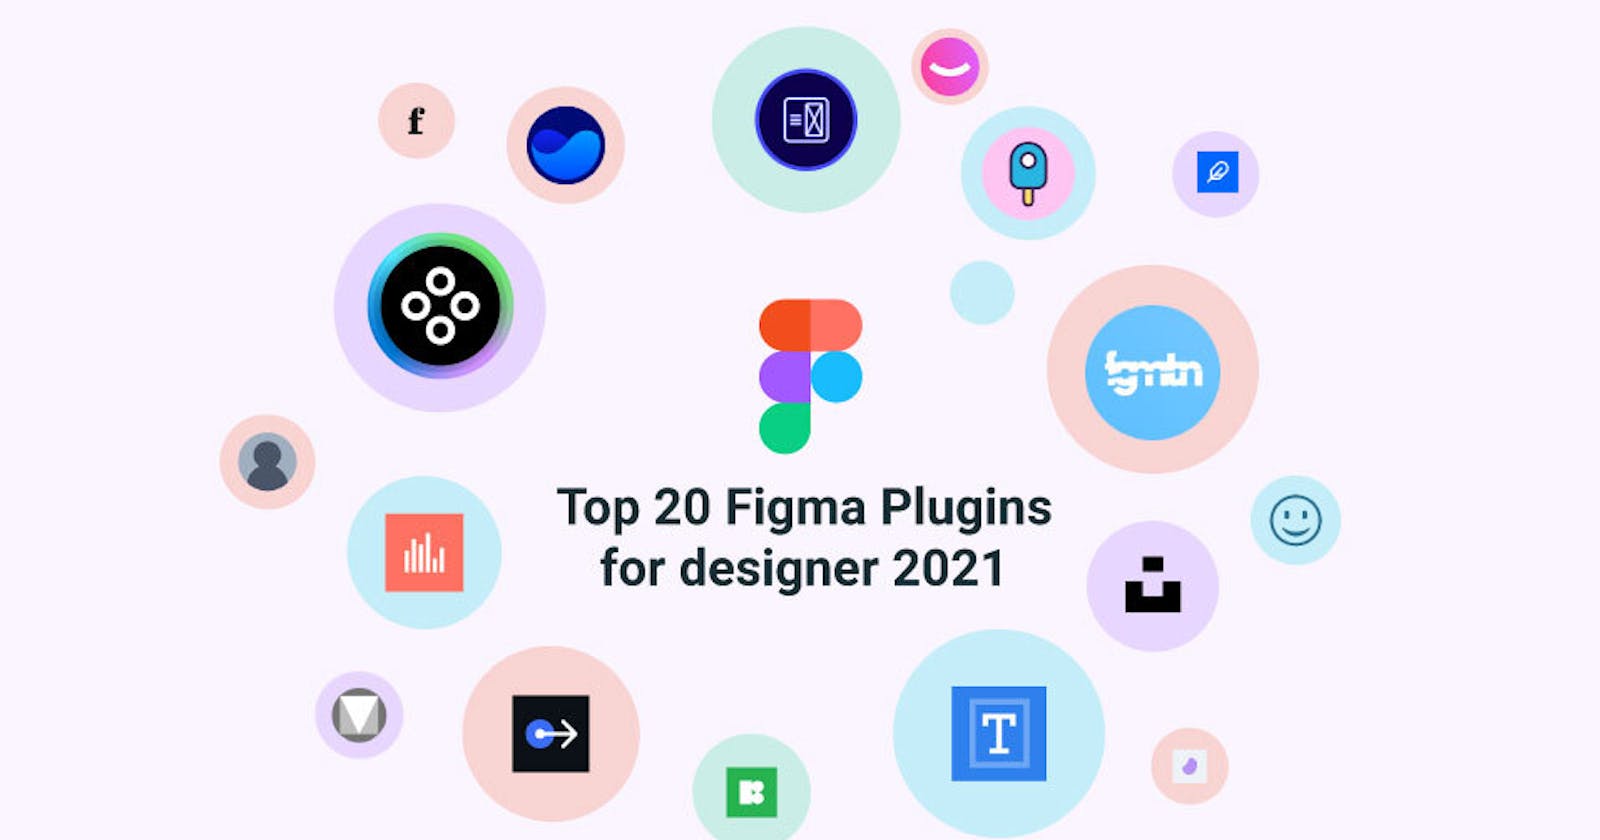 Top 20 Figma plug-ins for designer 2021